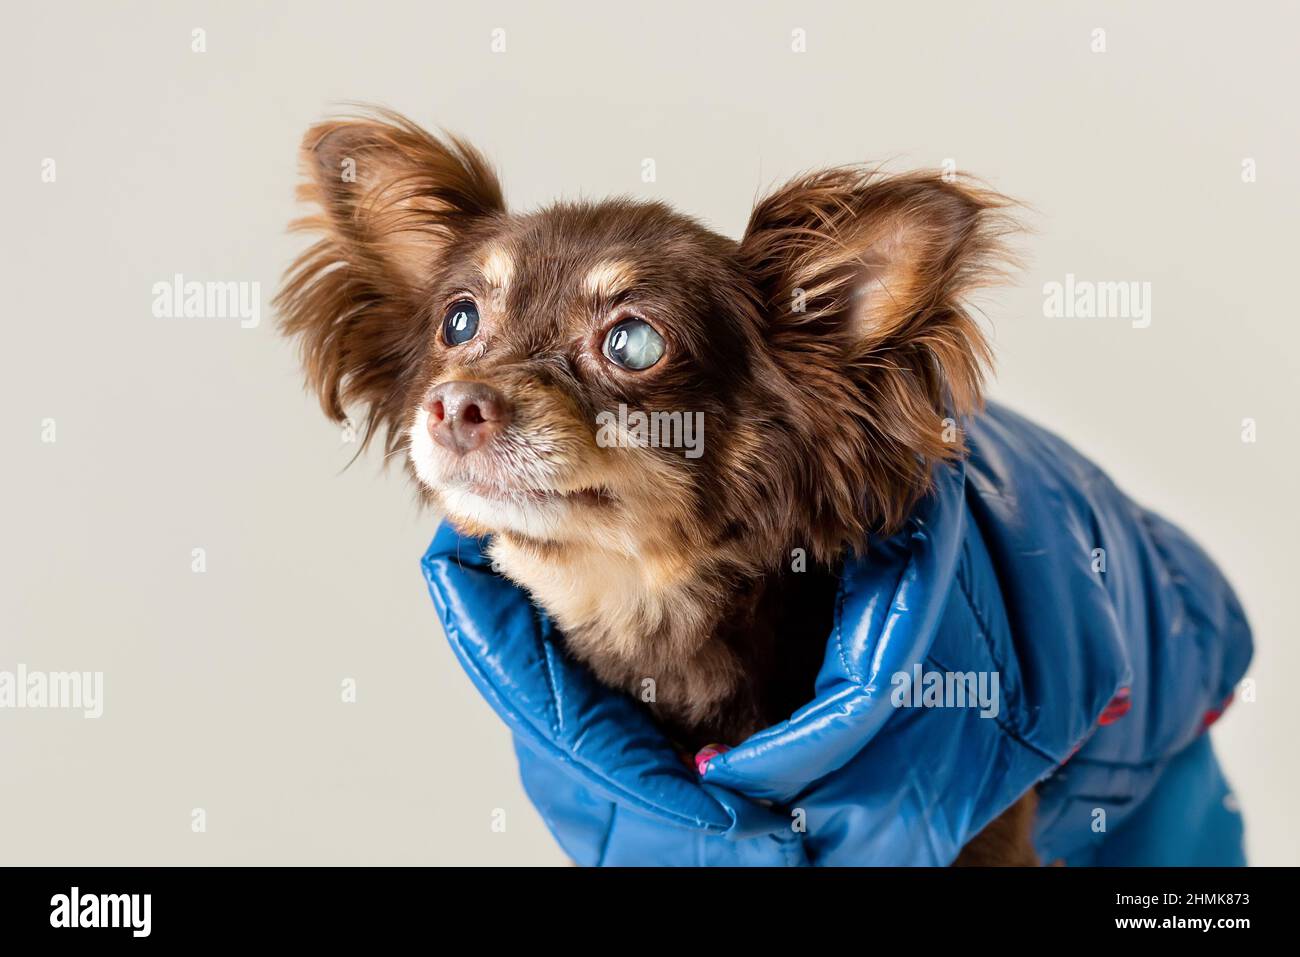 Kleine alte reinrassige Hund von Spielzeug Terrier Rasse hat Problem mit teilweise blinden Katarakt Augen. Stockfoto